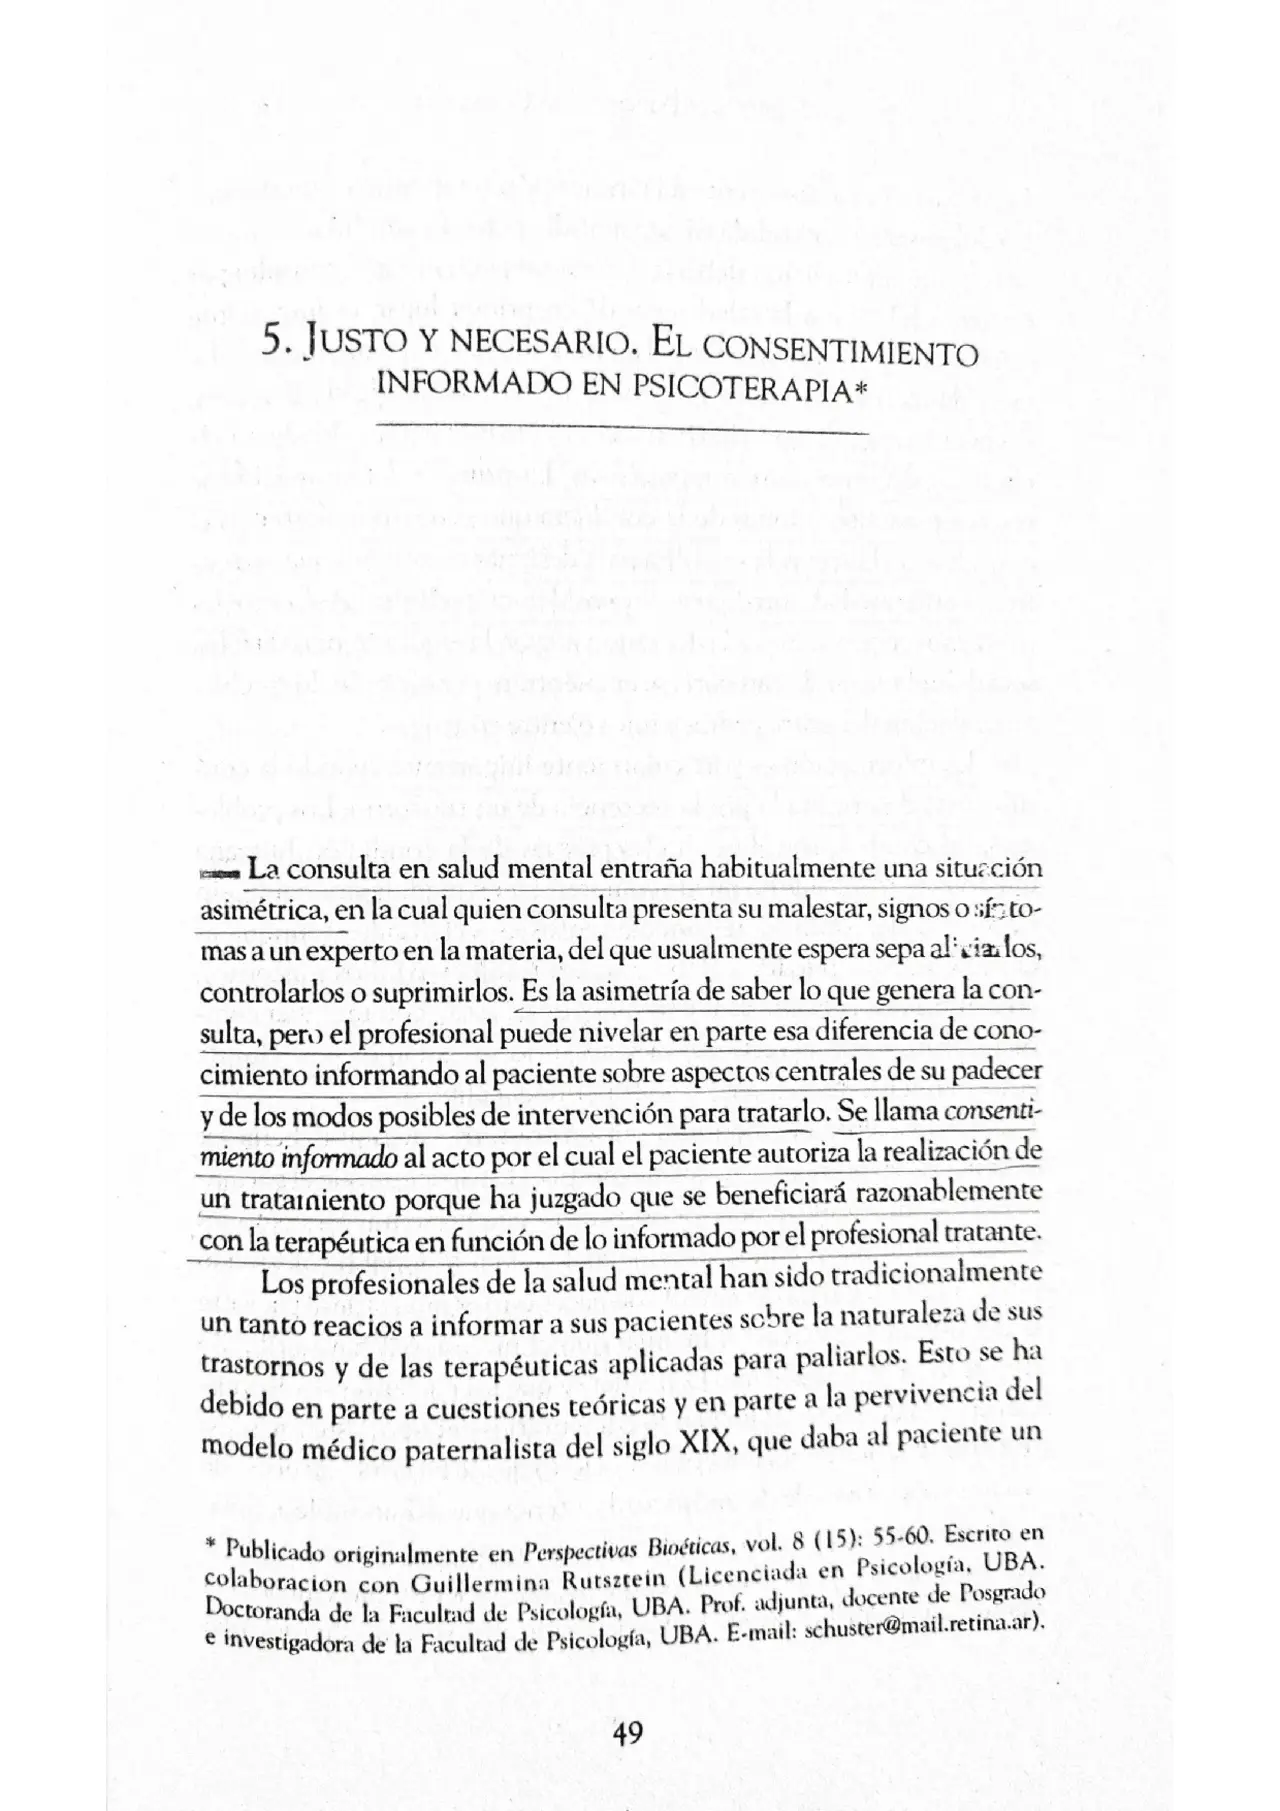 consentimiento informado psicologia uba - Qué es consentimiento informado psicología PDF